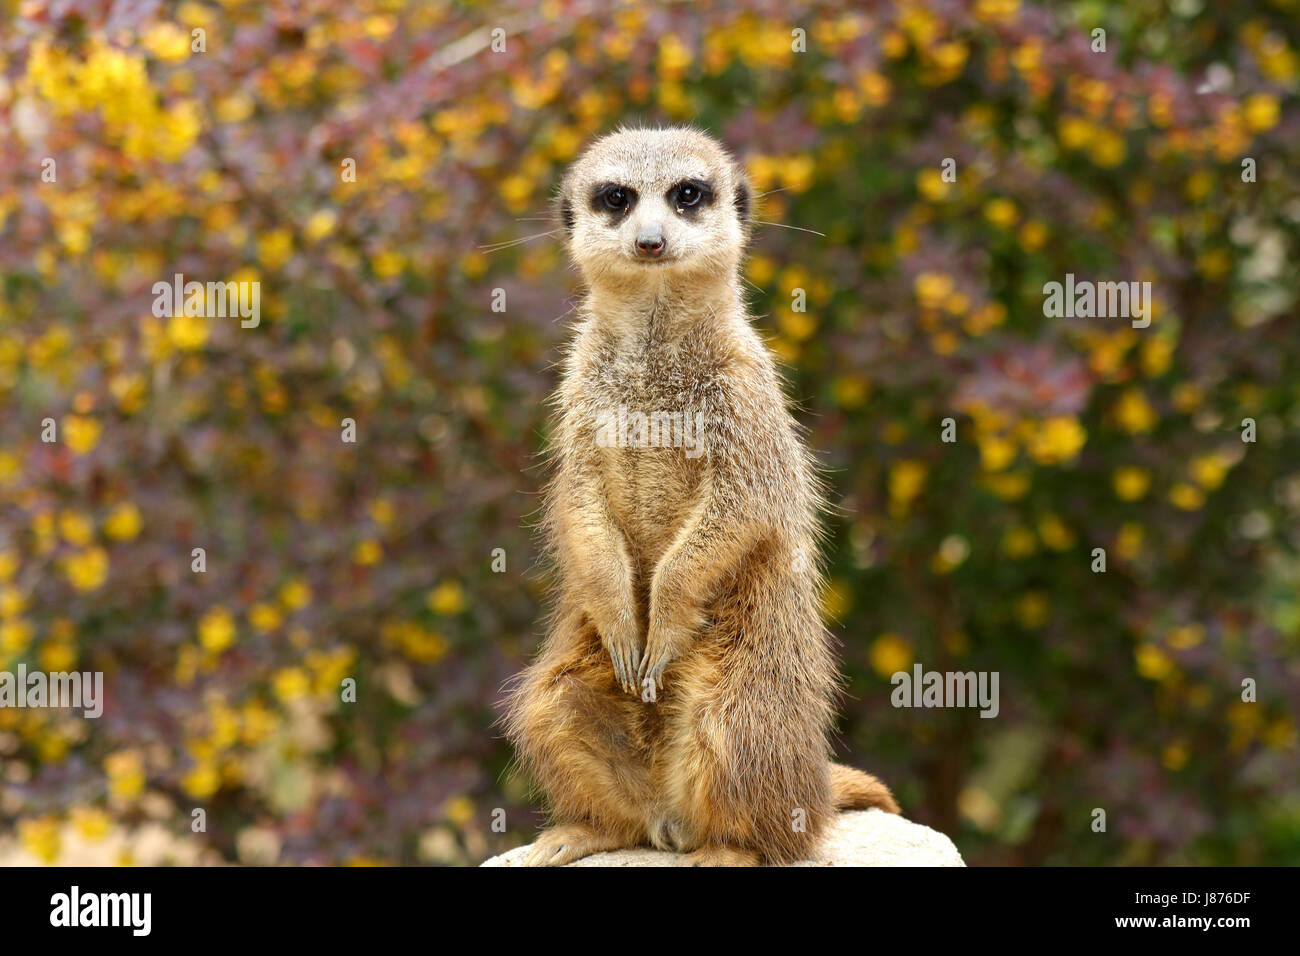 El vello de la piel morena meerkats suricata o marrón parduzco pelos marrón claro piel guardar Foto de stock